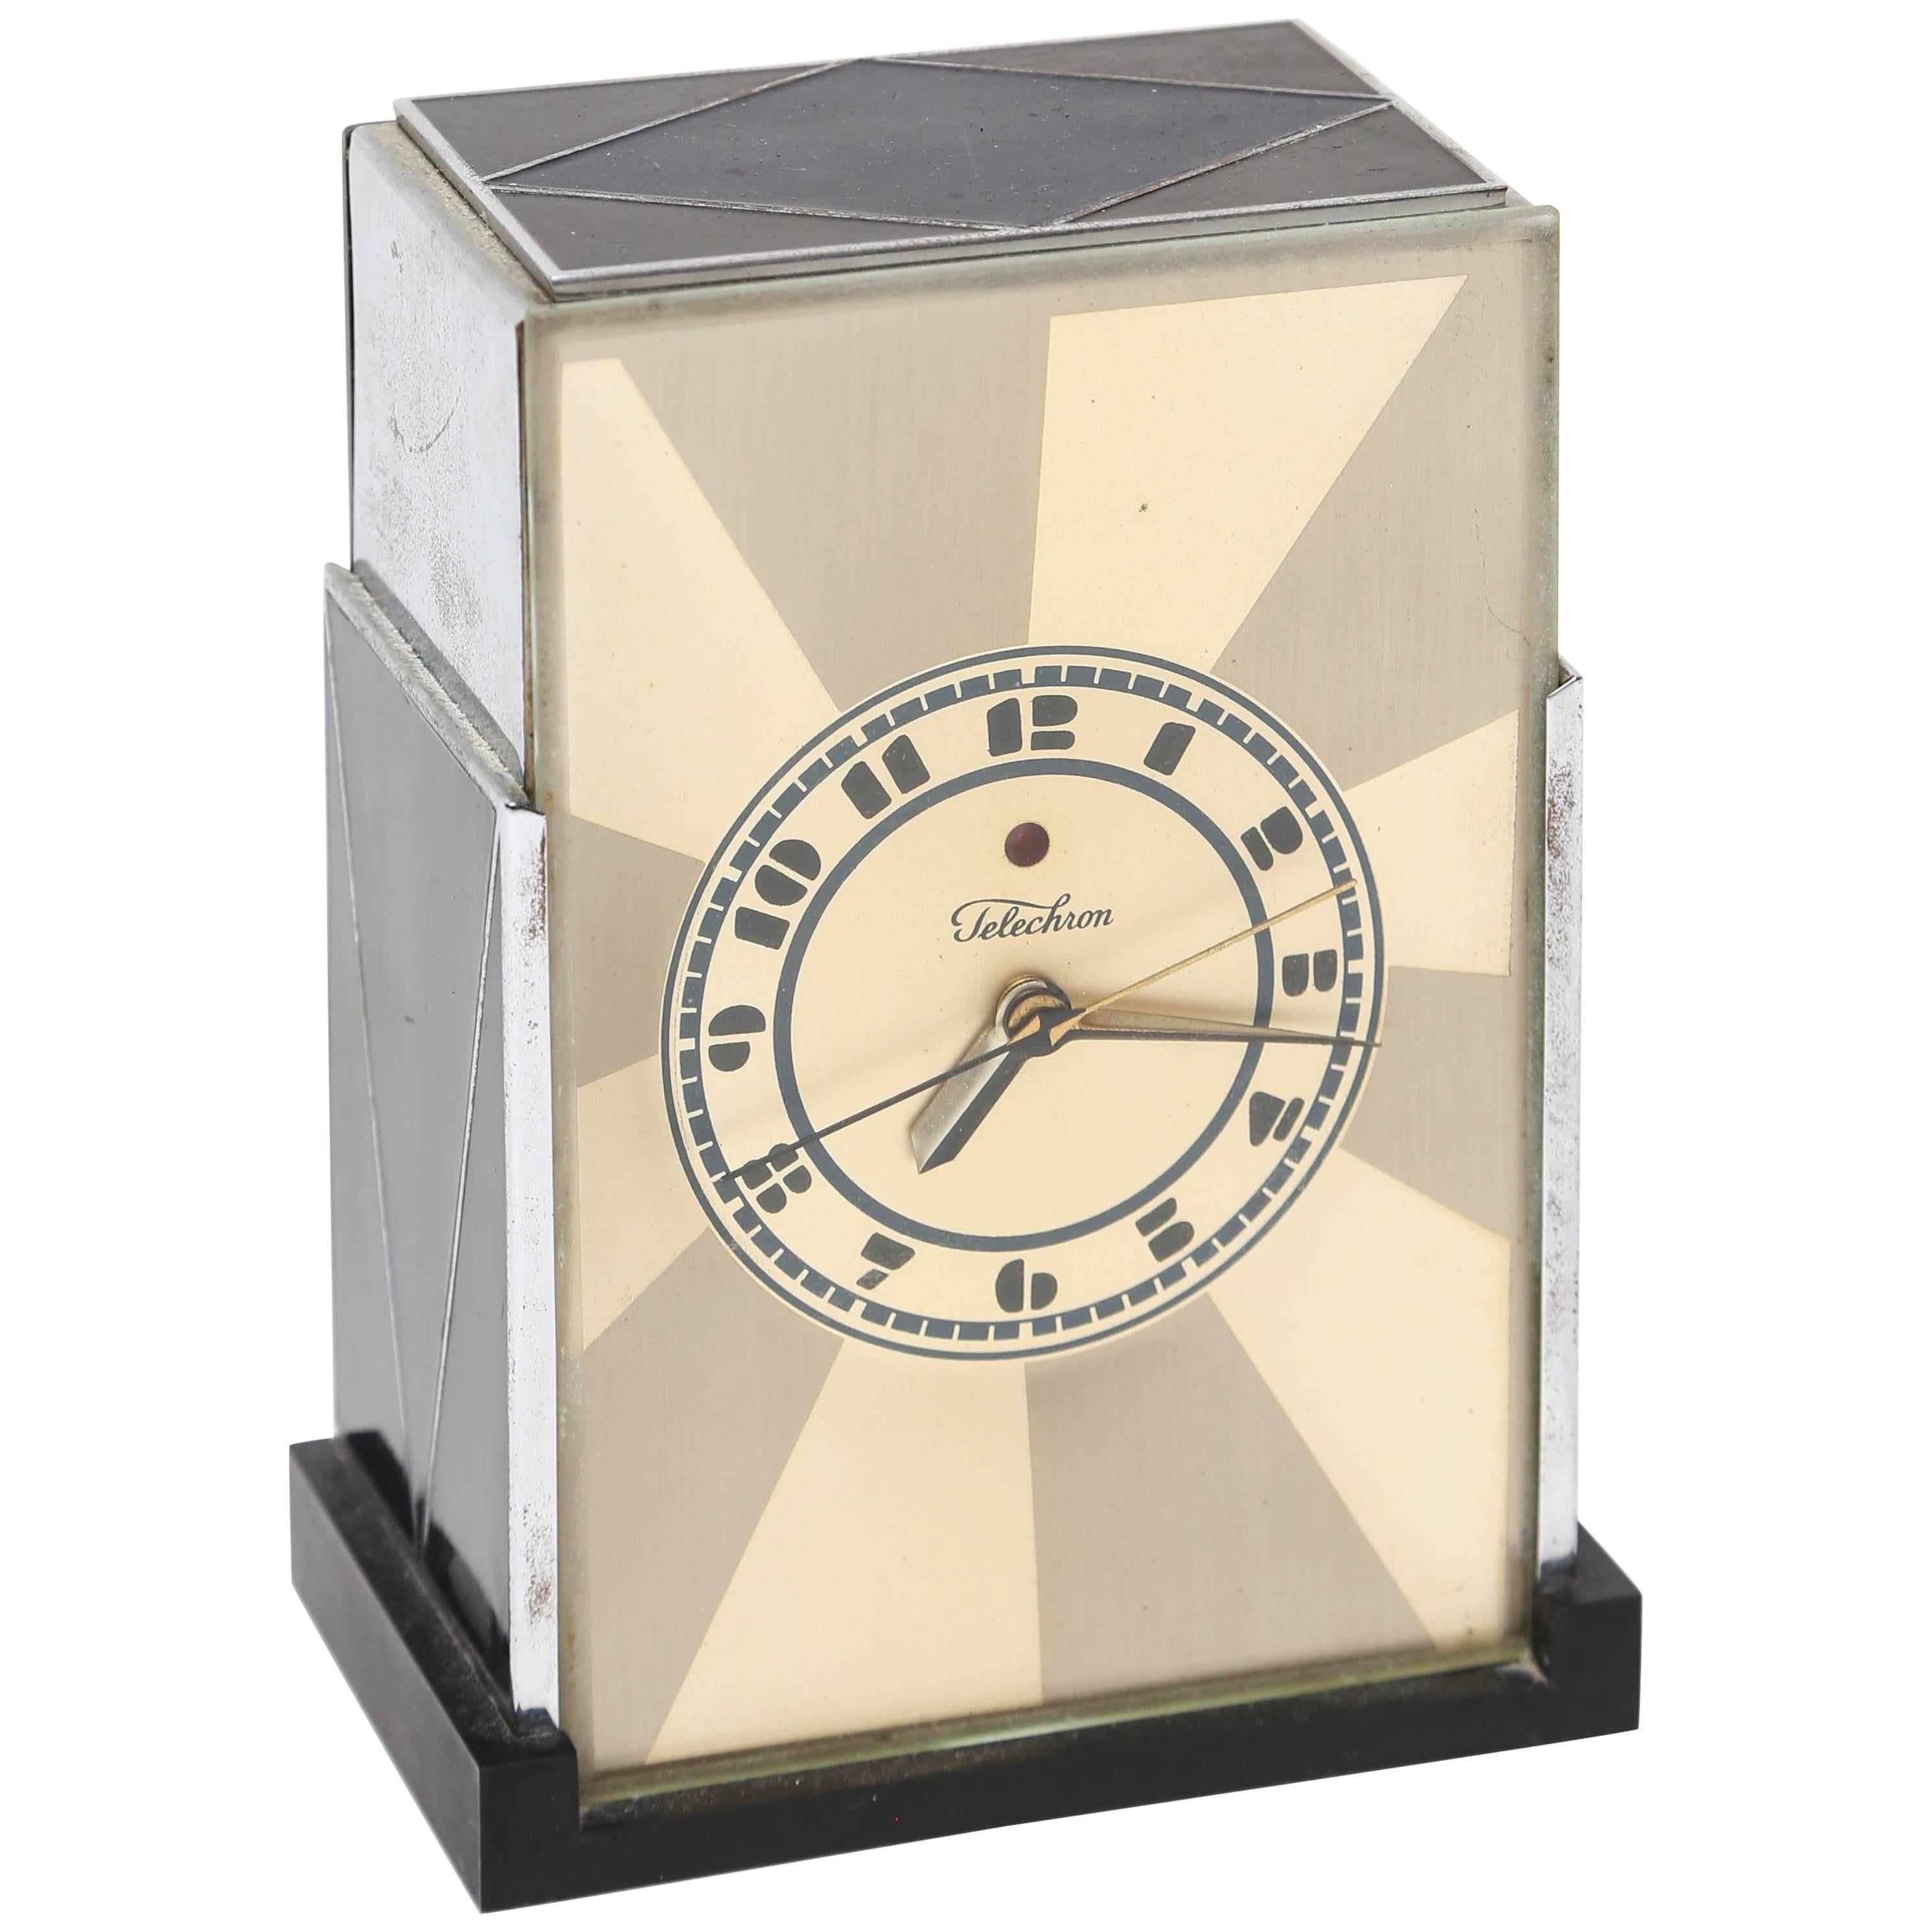 Paul Frankl Modernique Clock